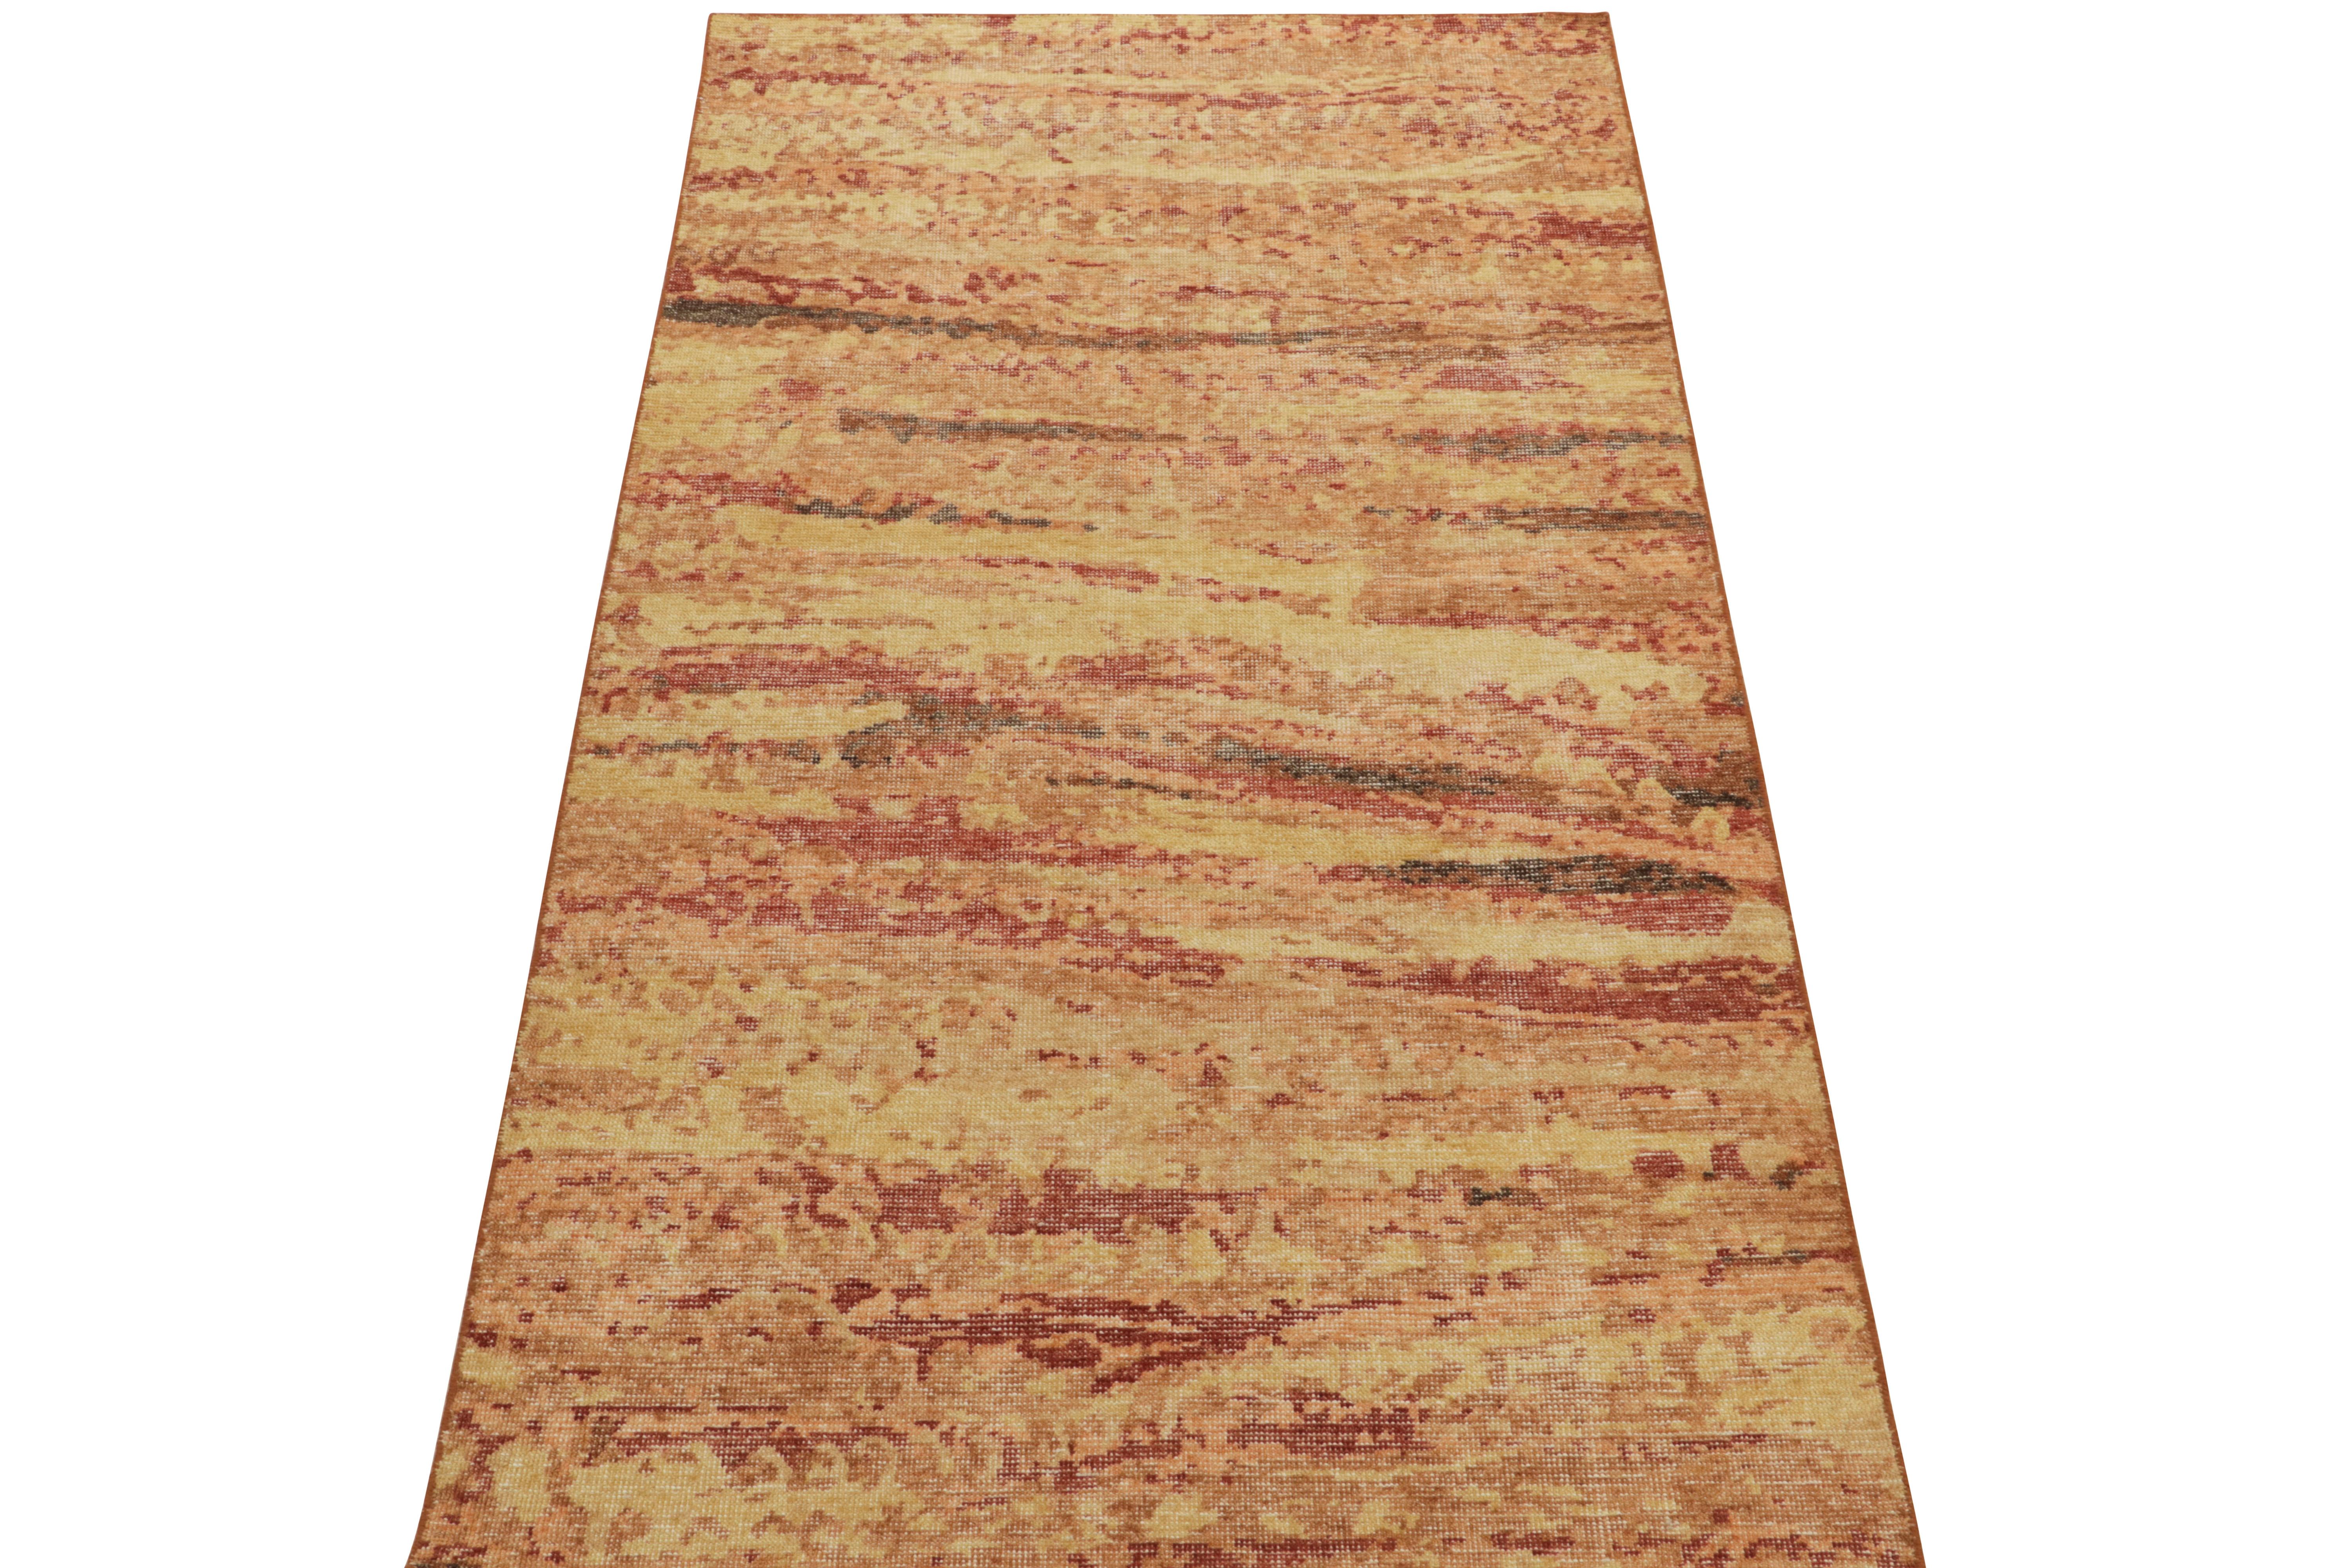 Der abstrakte Teppich 4x8 aus der Homage-Kollektion von Rug & Kilim zeichnet sich durch ein warmes, lebendiges Spiel aus Scharlachrot, Mandarine, geschmolzenem Gold und Brauntönen aus und ist ein einzigartiger Vertreter dieser gefeierten Linie. Ein